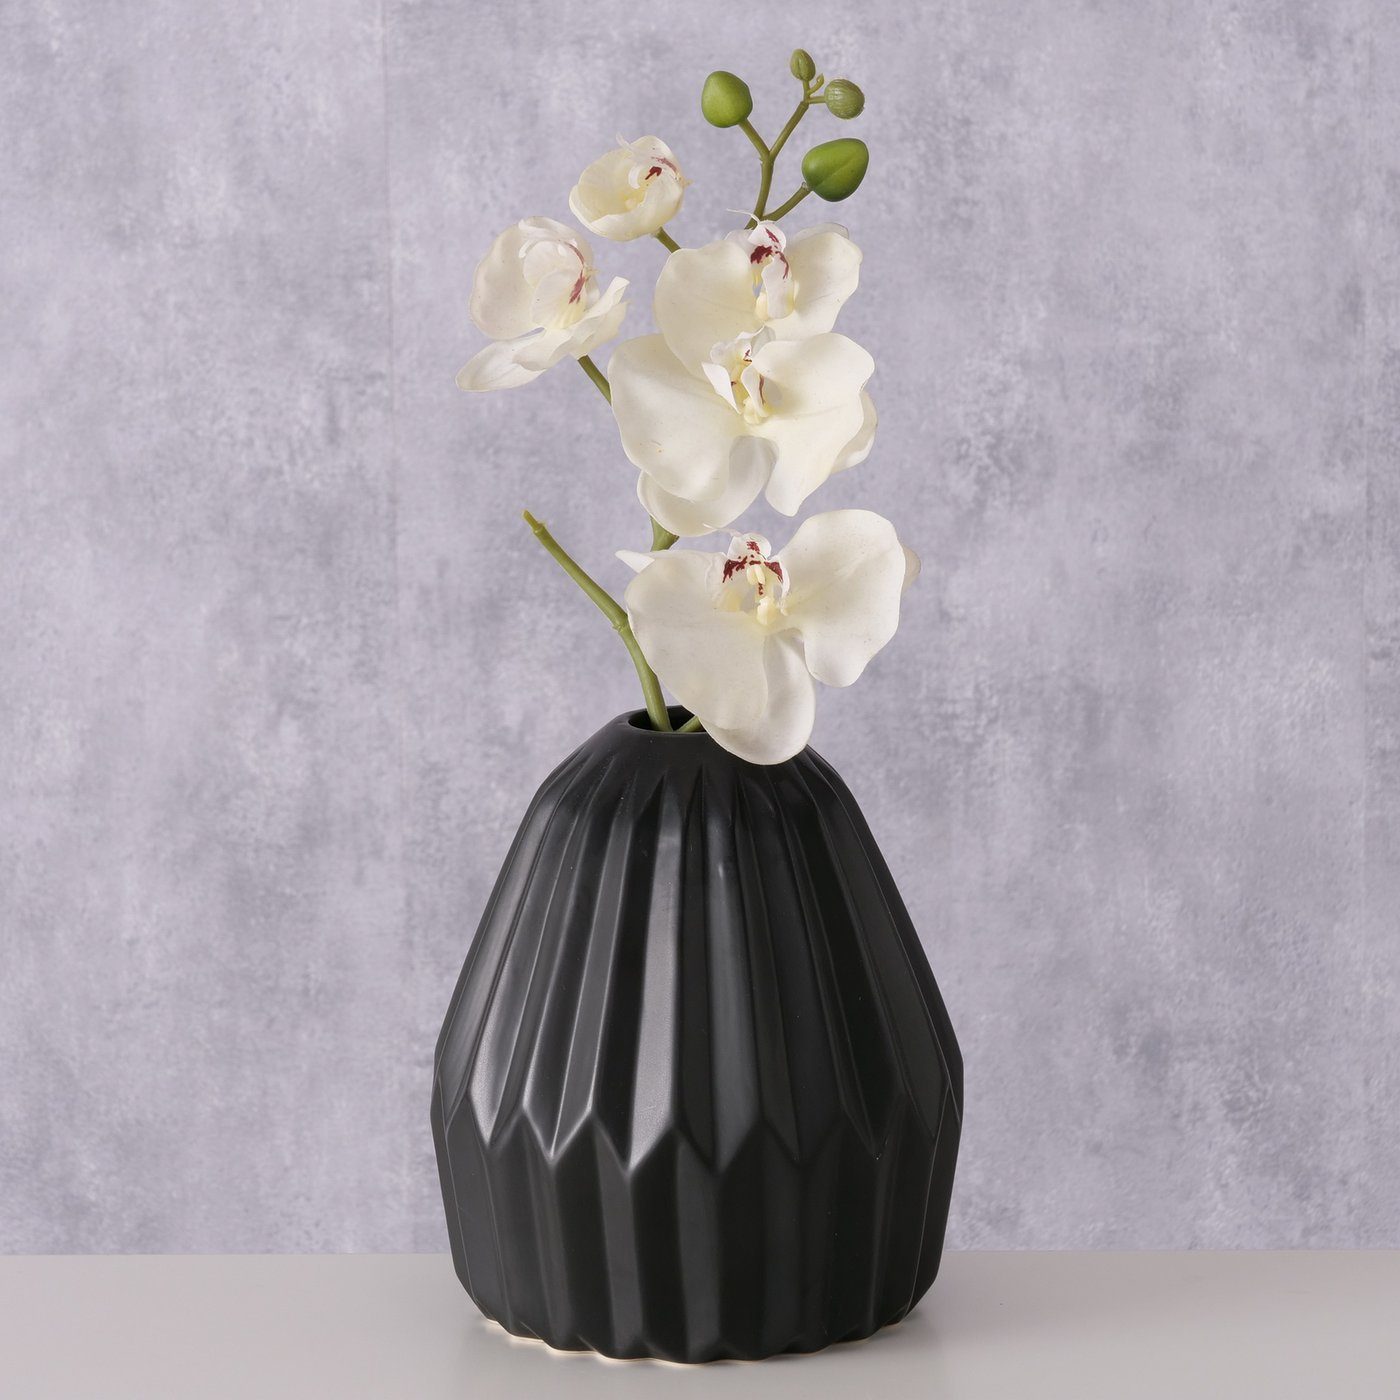 BOLTZE Dekovase "Sian" aus Keramik in schwarz, Vase Blumenvase